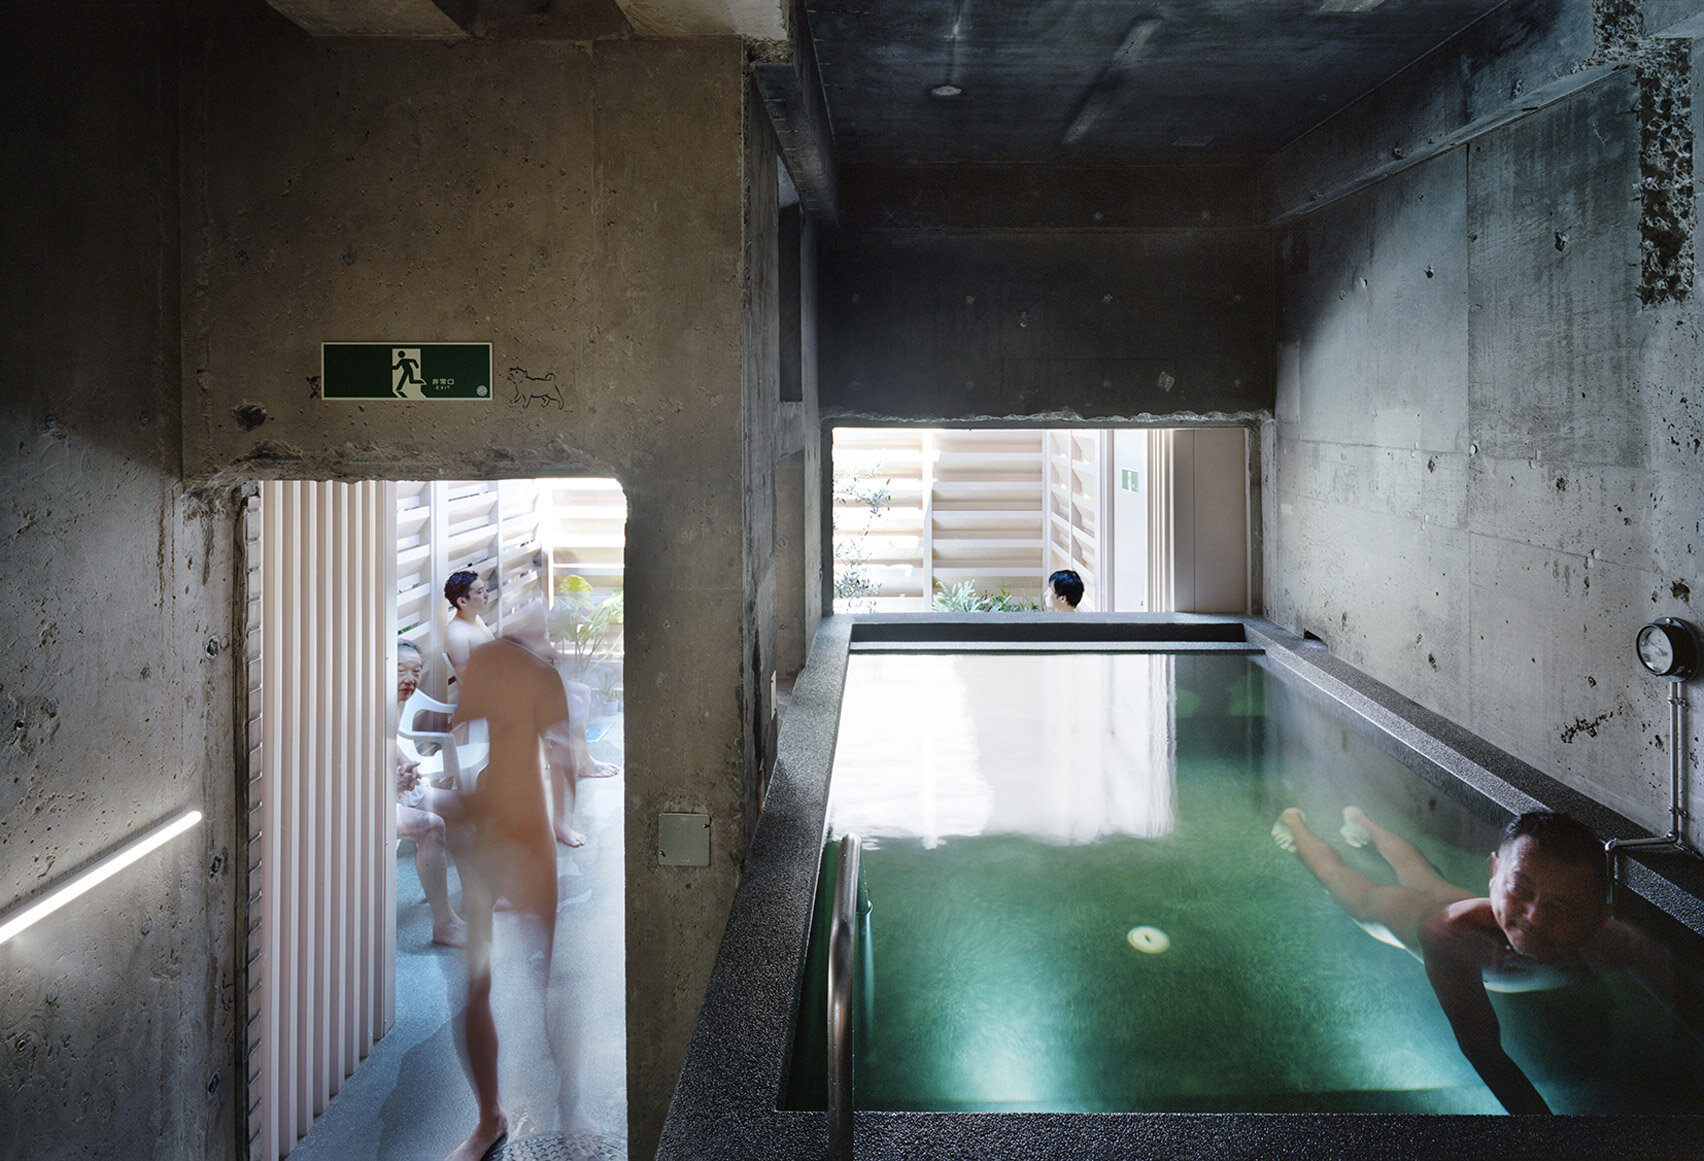 koganeyu-schemata-architect-sento-public-bath-house-renovation-japan-architecture_dezeen_1704_col_10.jpg